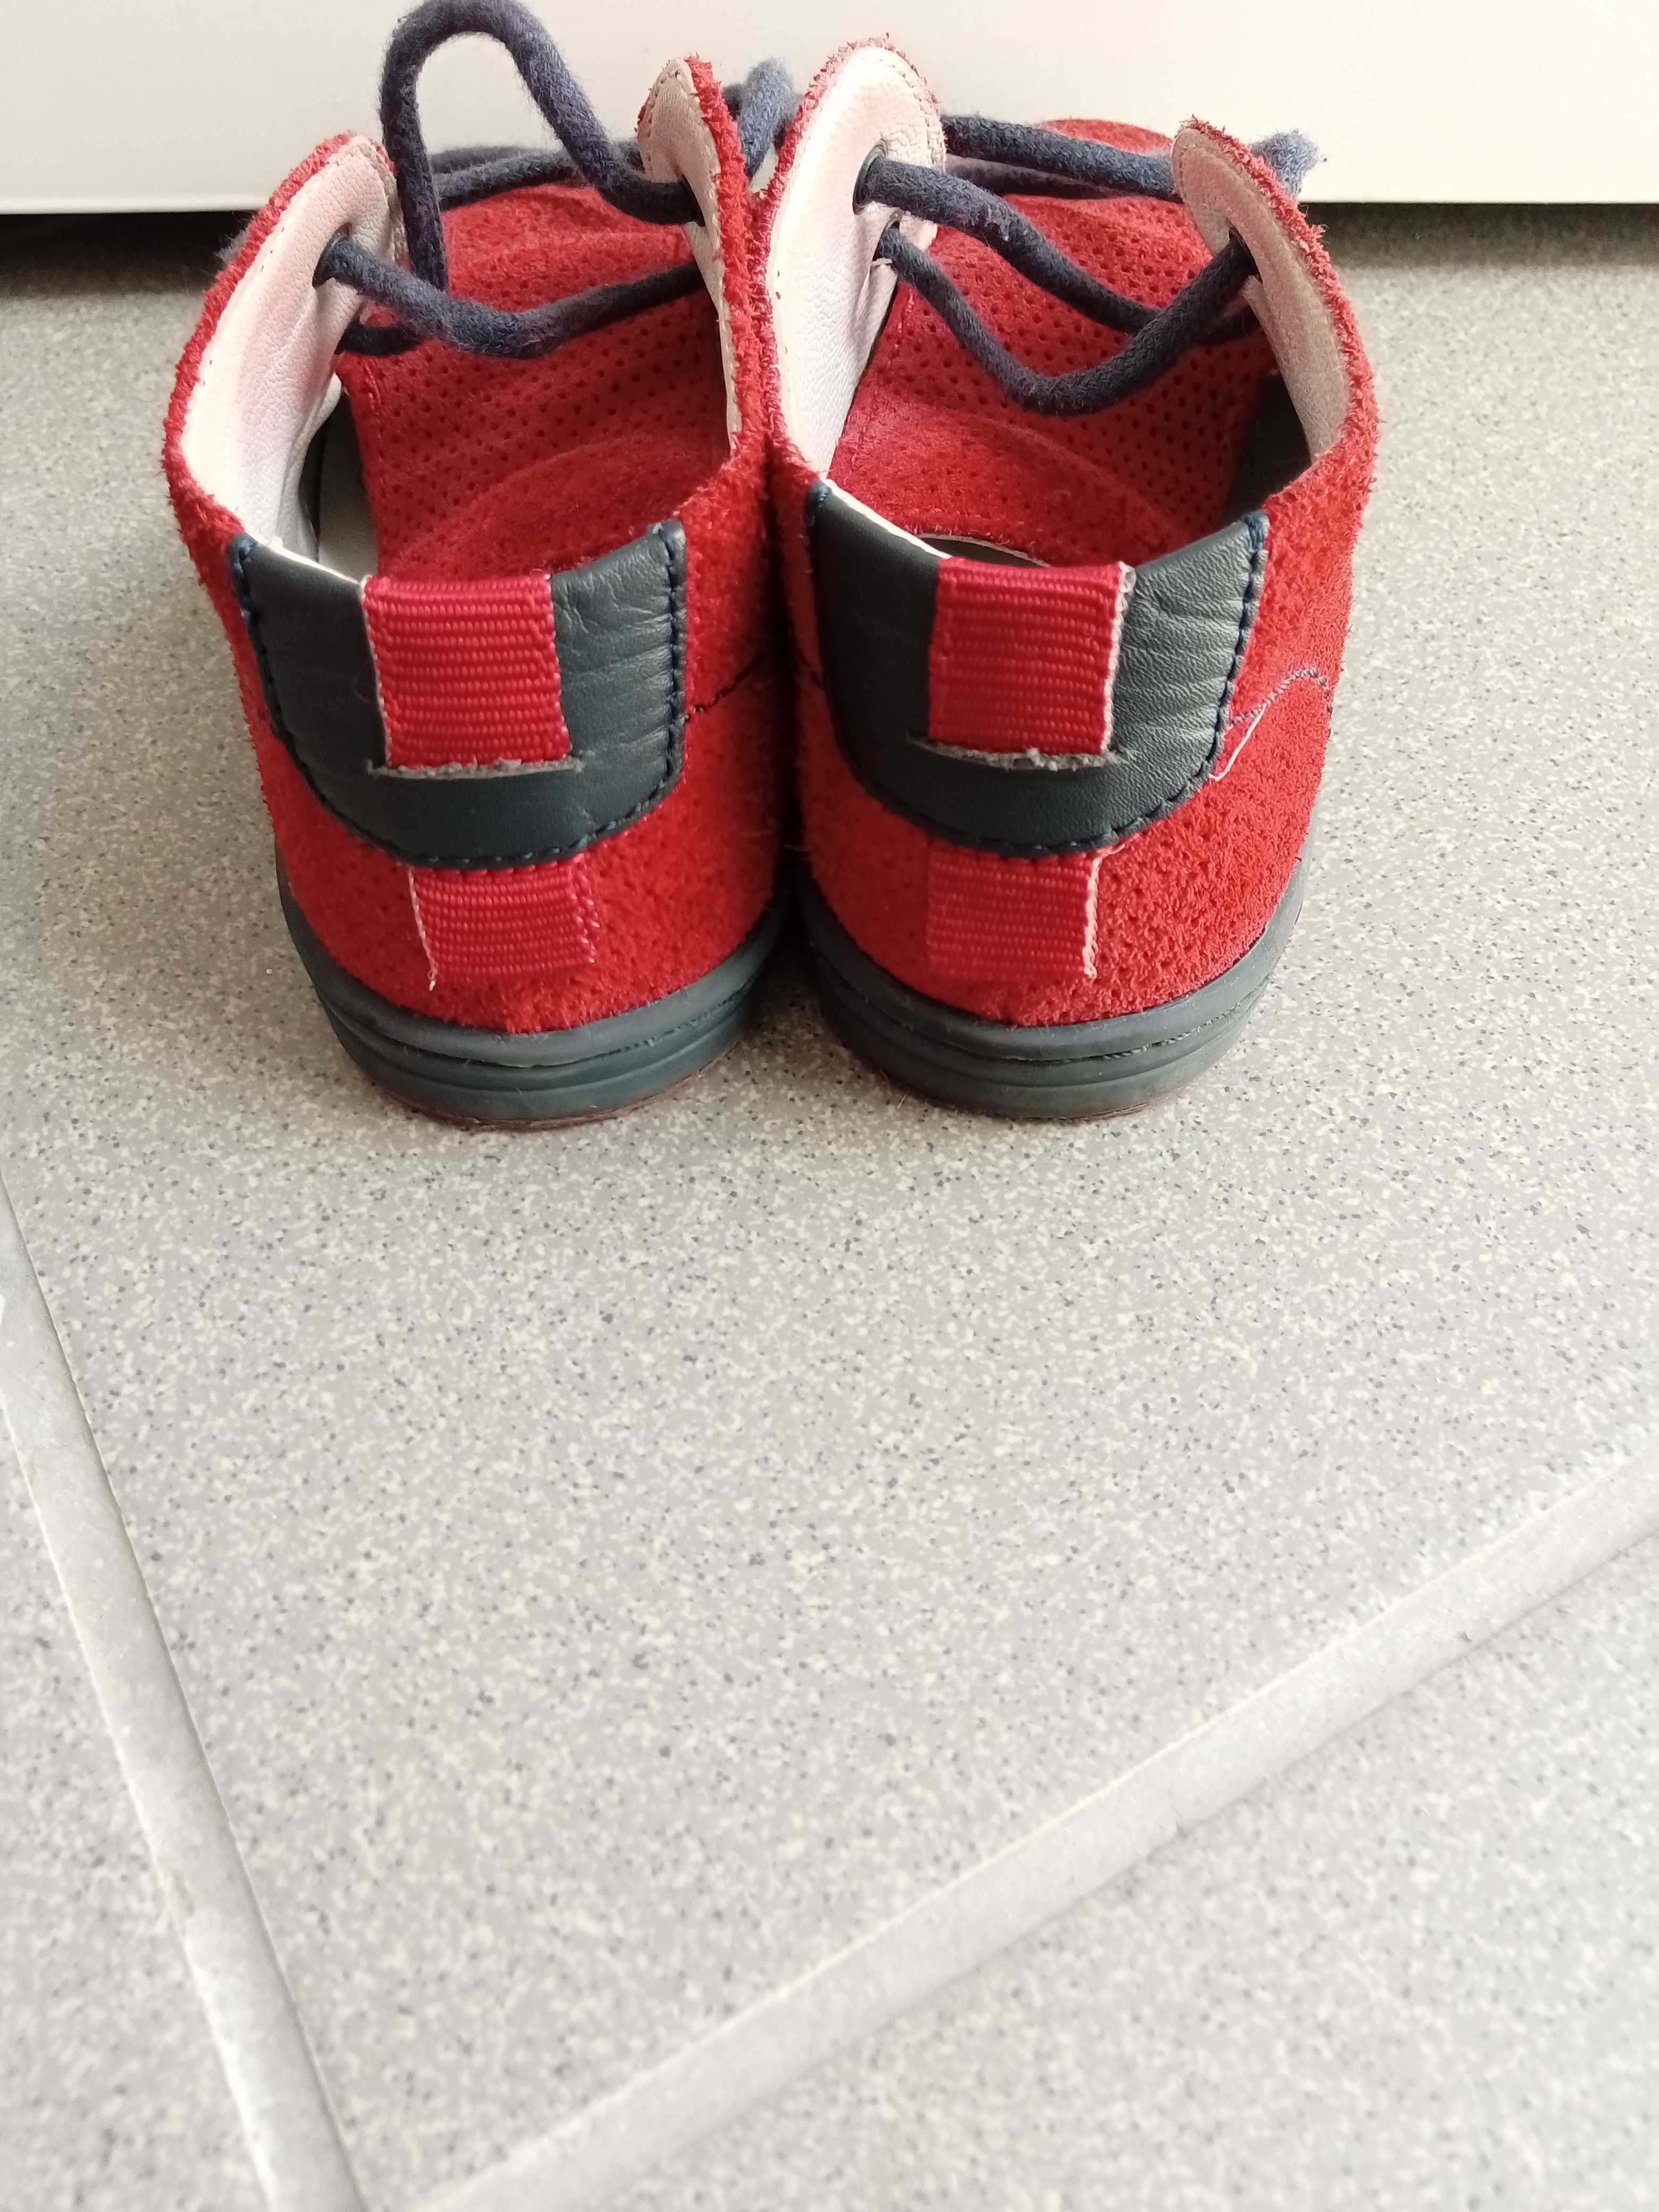 Sapatos Chicco de criança unisexo, tamanho 22